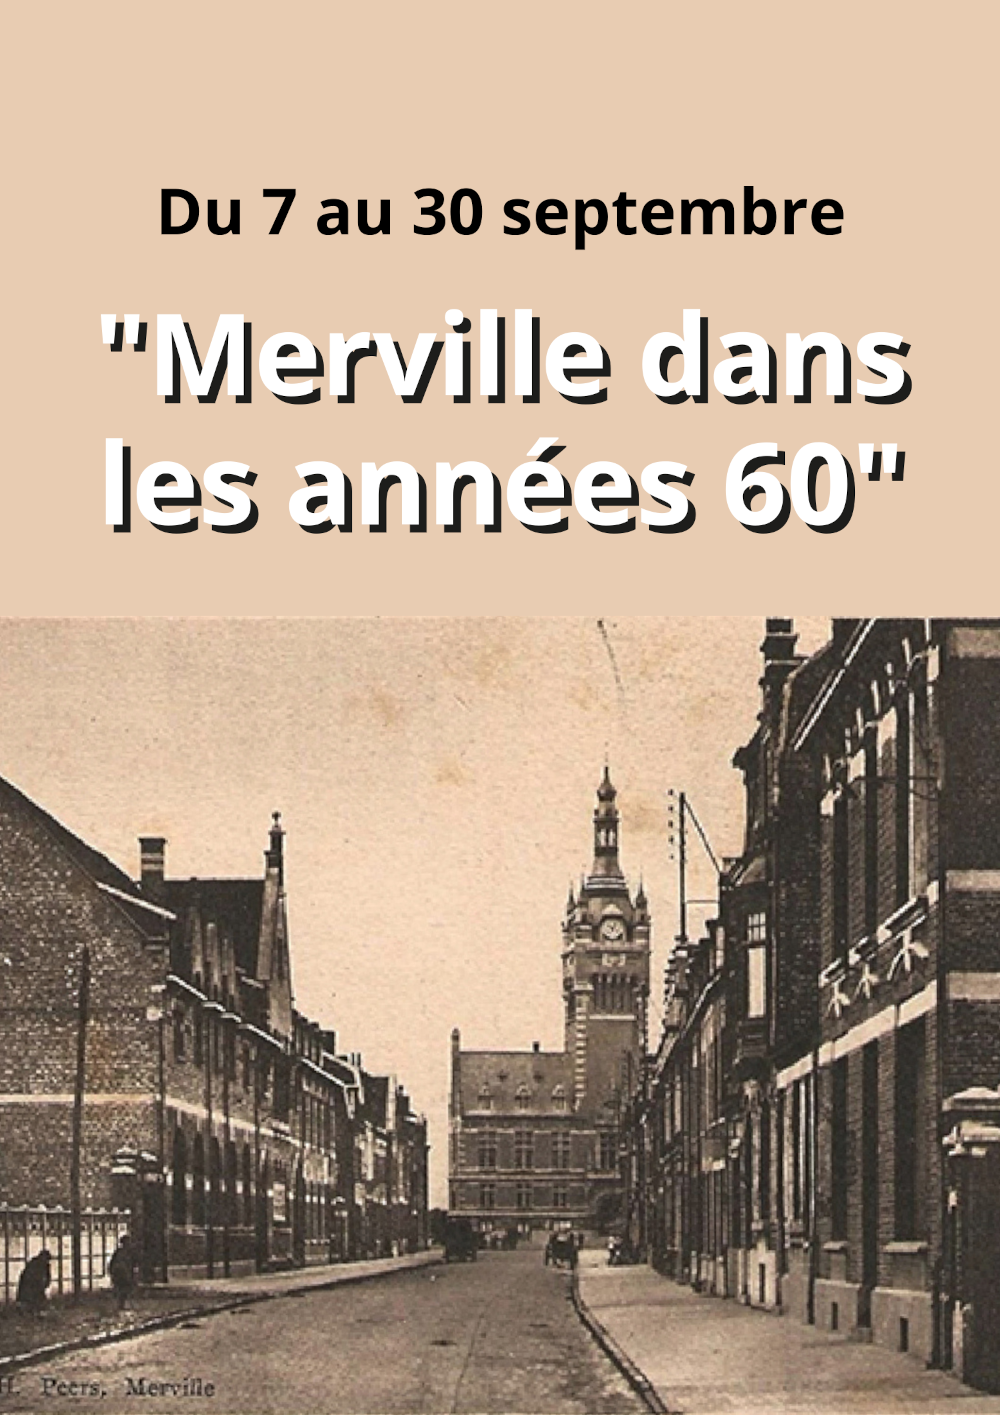 Exposition "Merville dans les années 60"